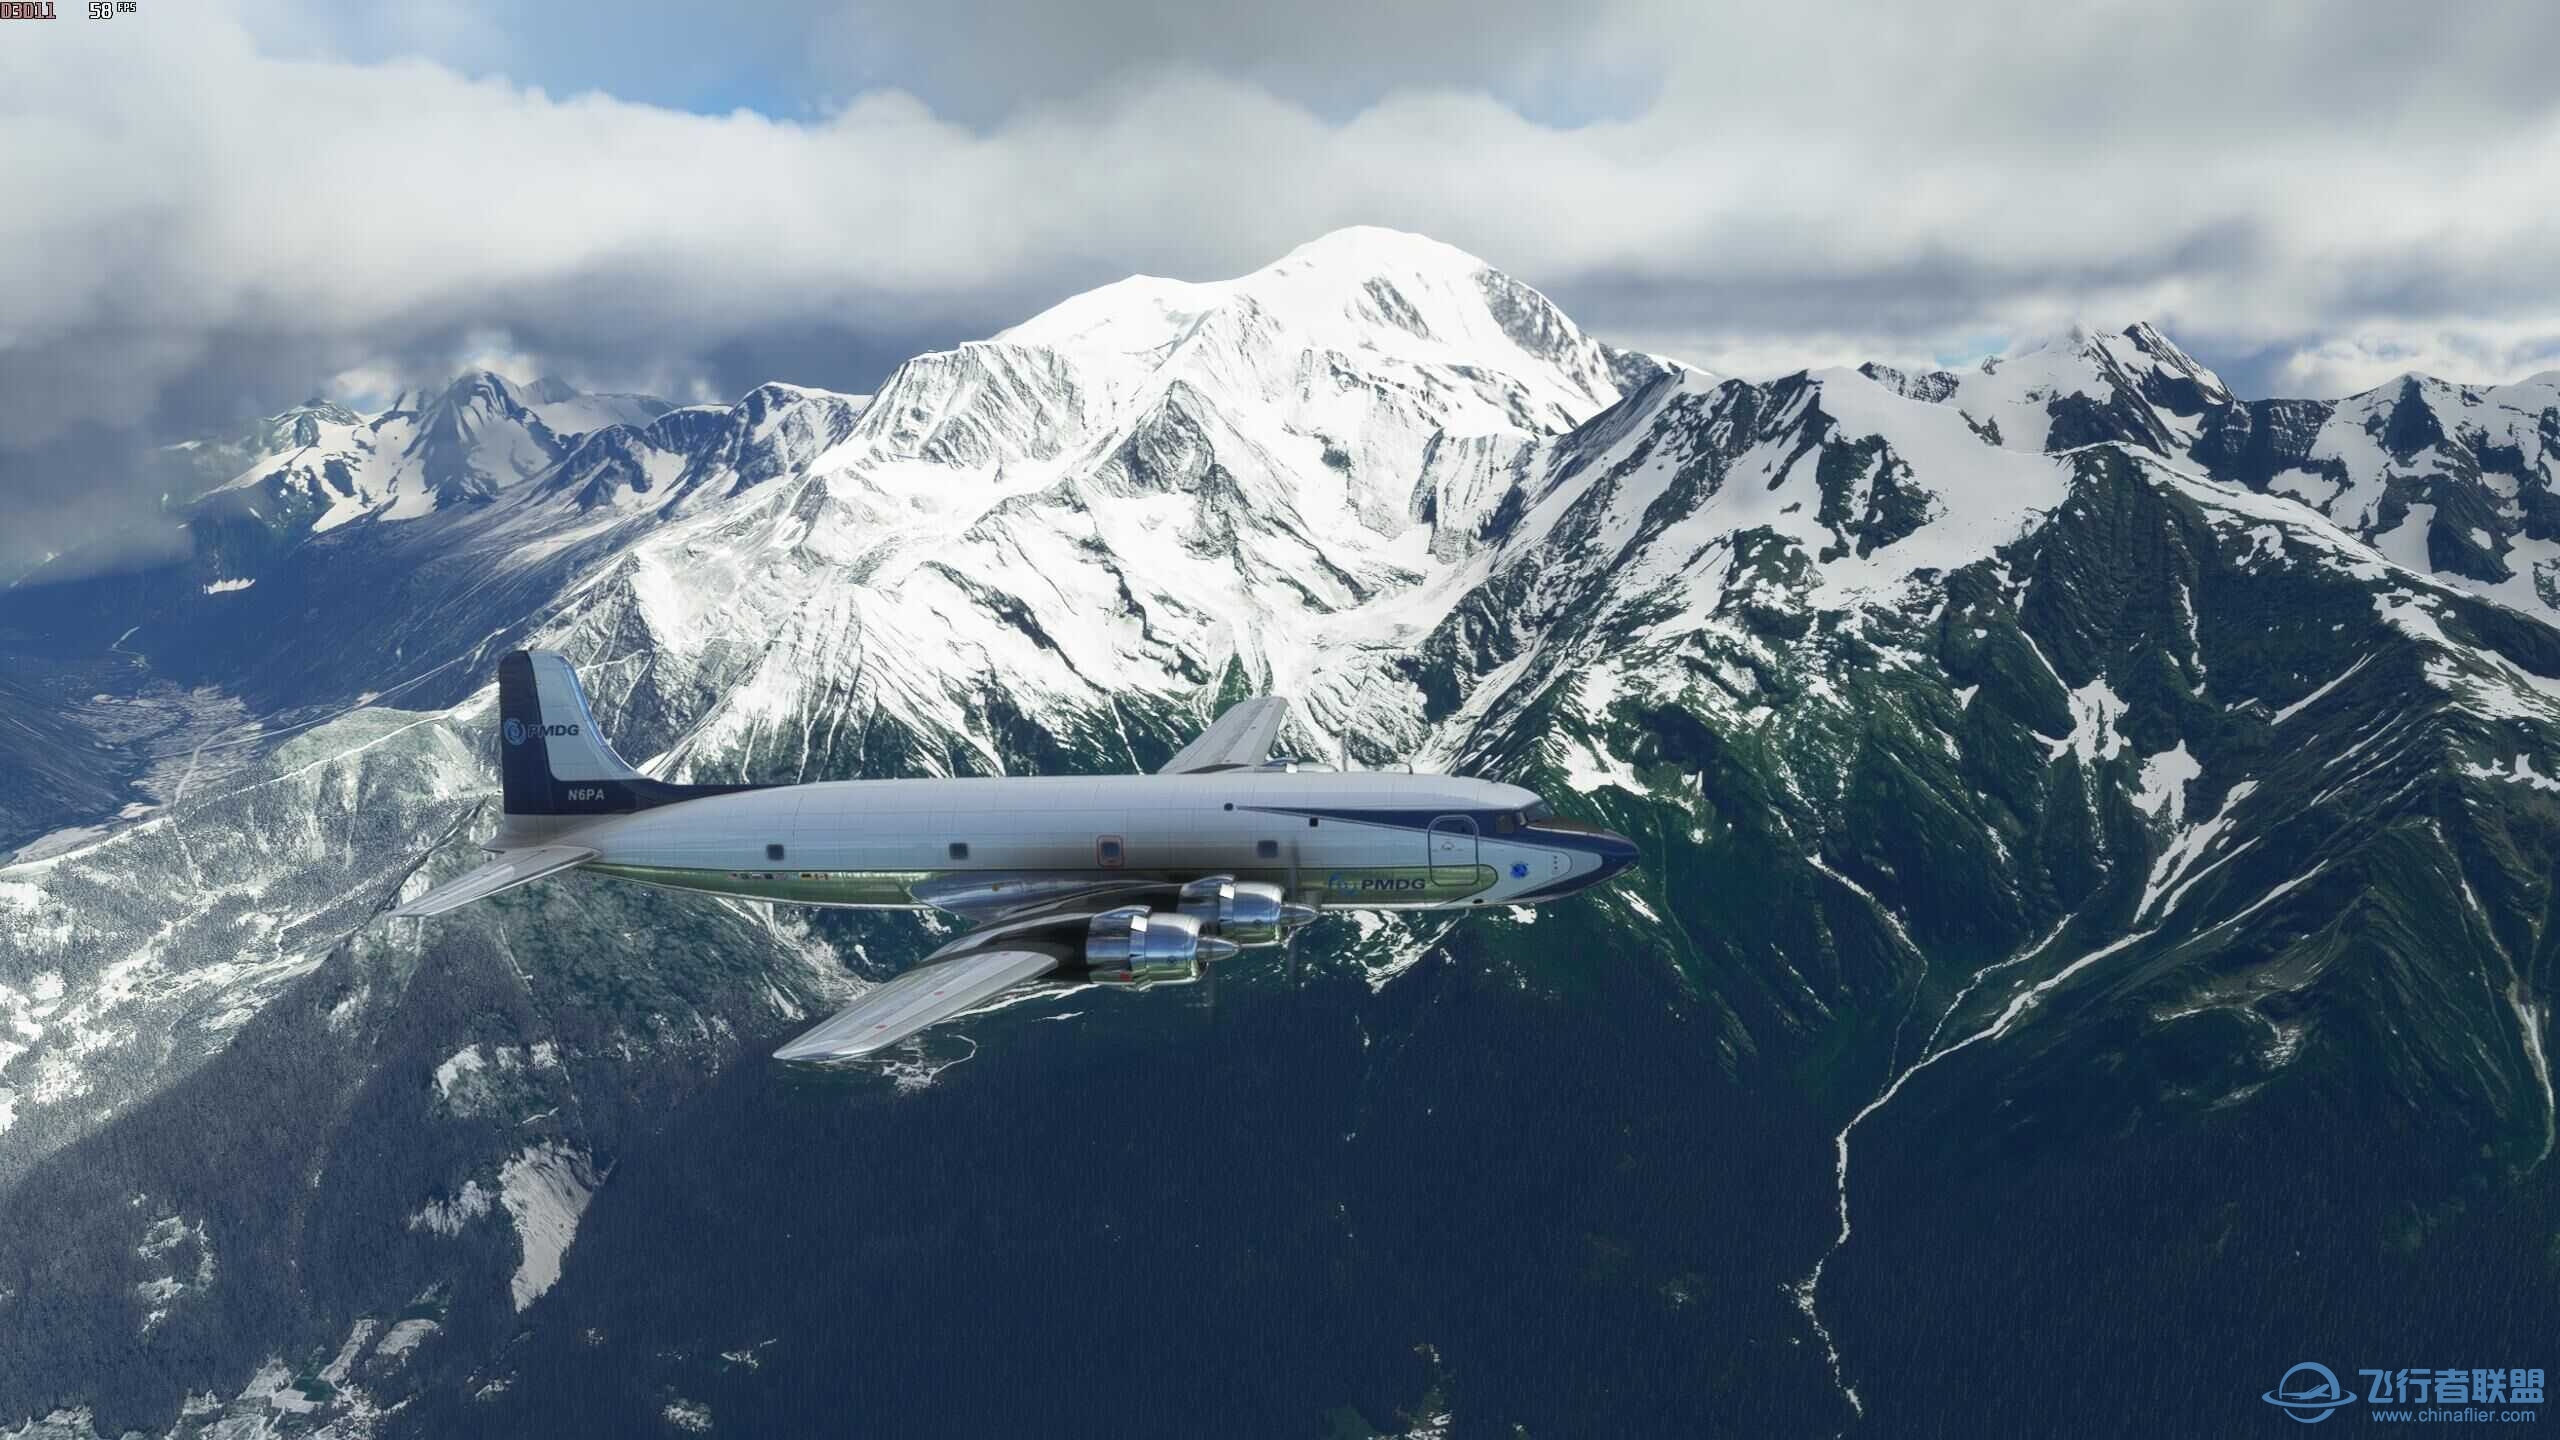 xplane11和微软模拟飞行2020哪个体验感好？-5864 